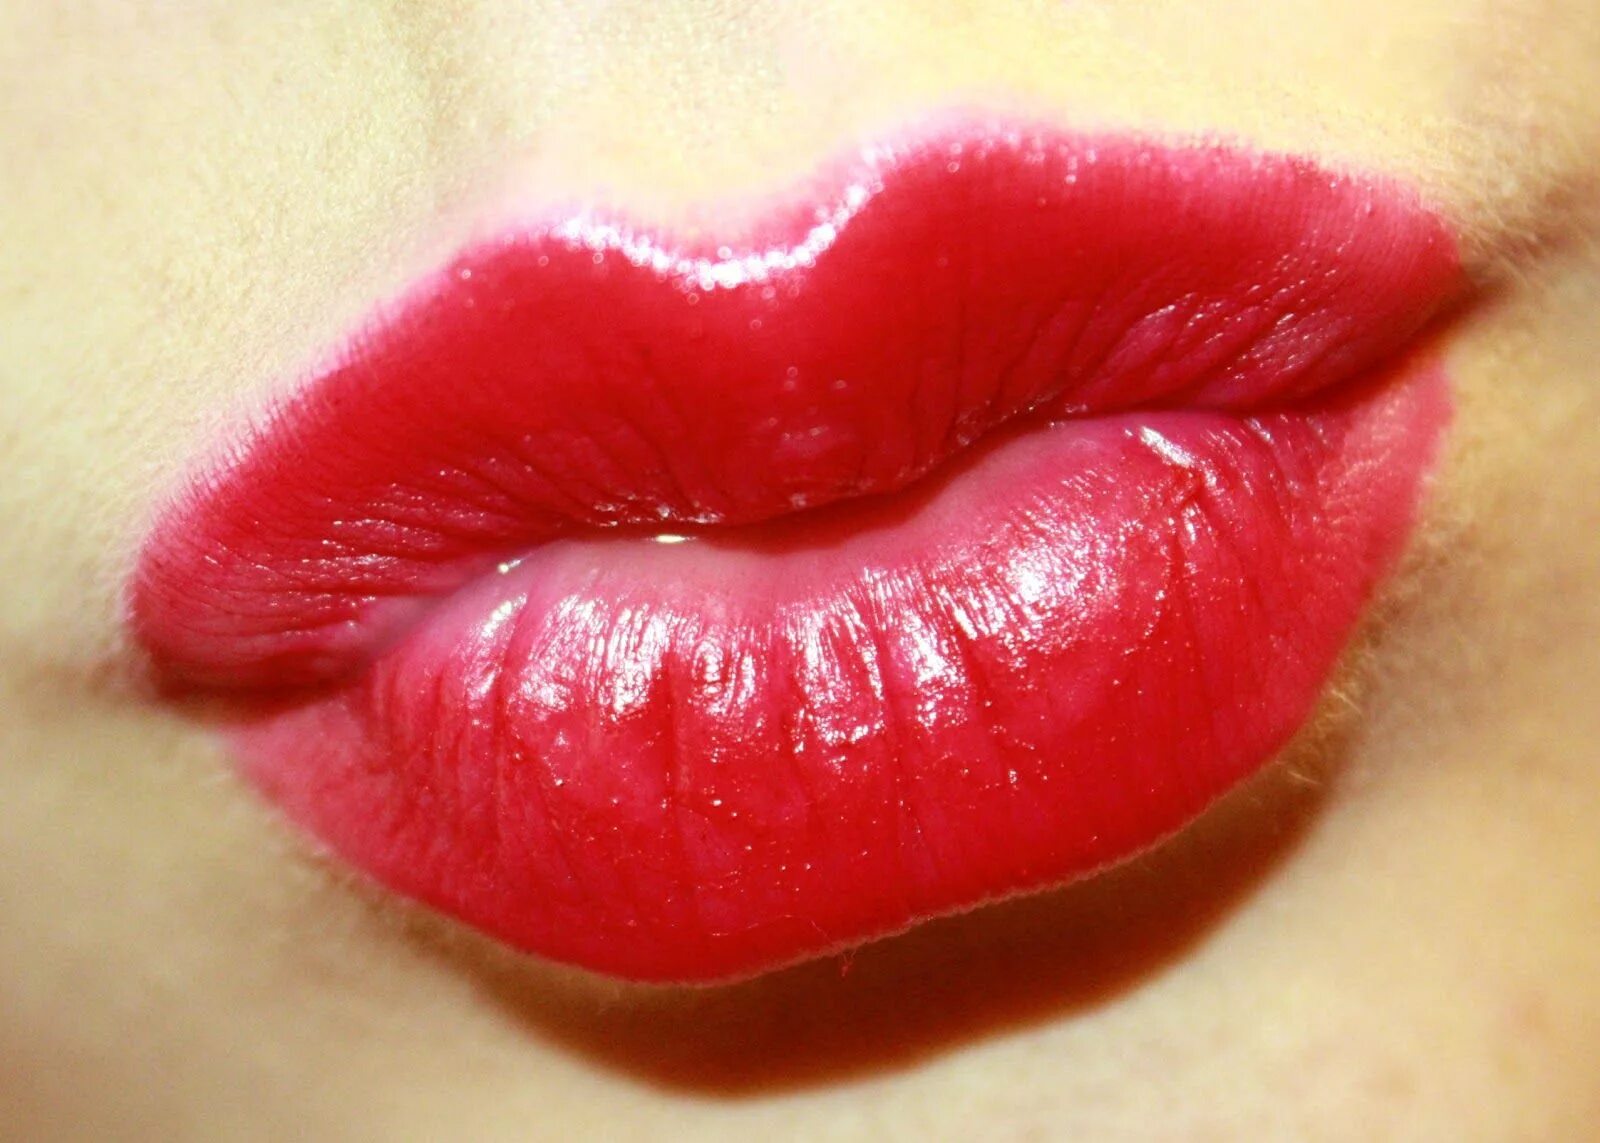 I love lips. Красивые губы. Красивые губки. Губки поцелуй. Поцелуй в губы.